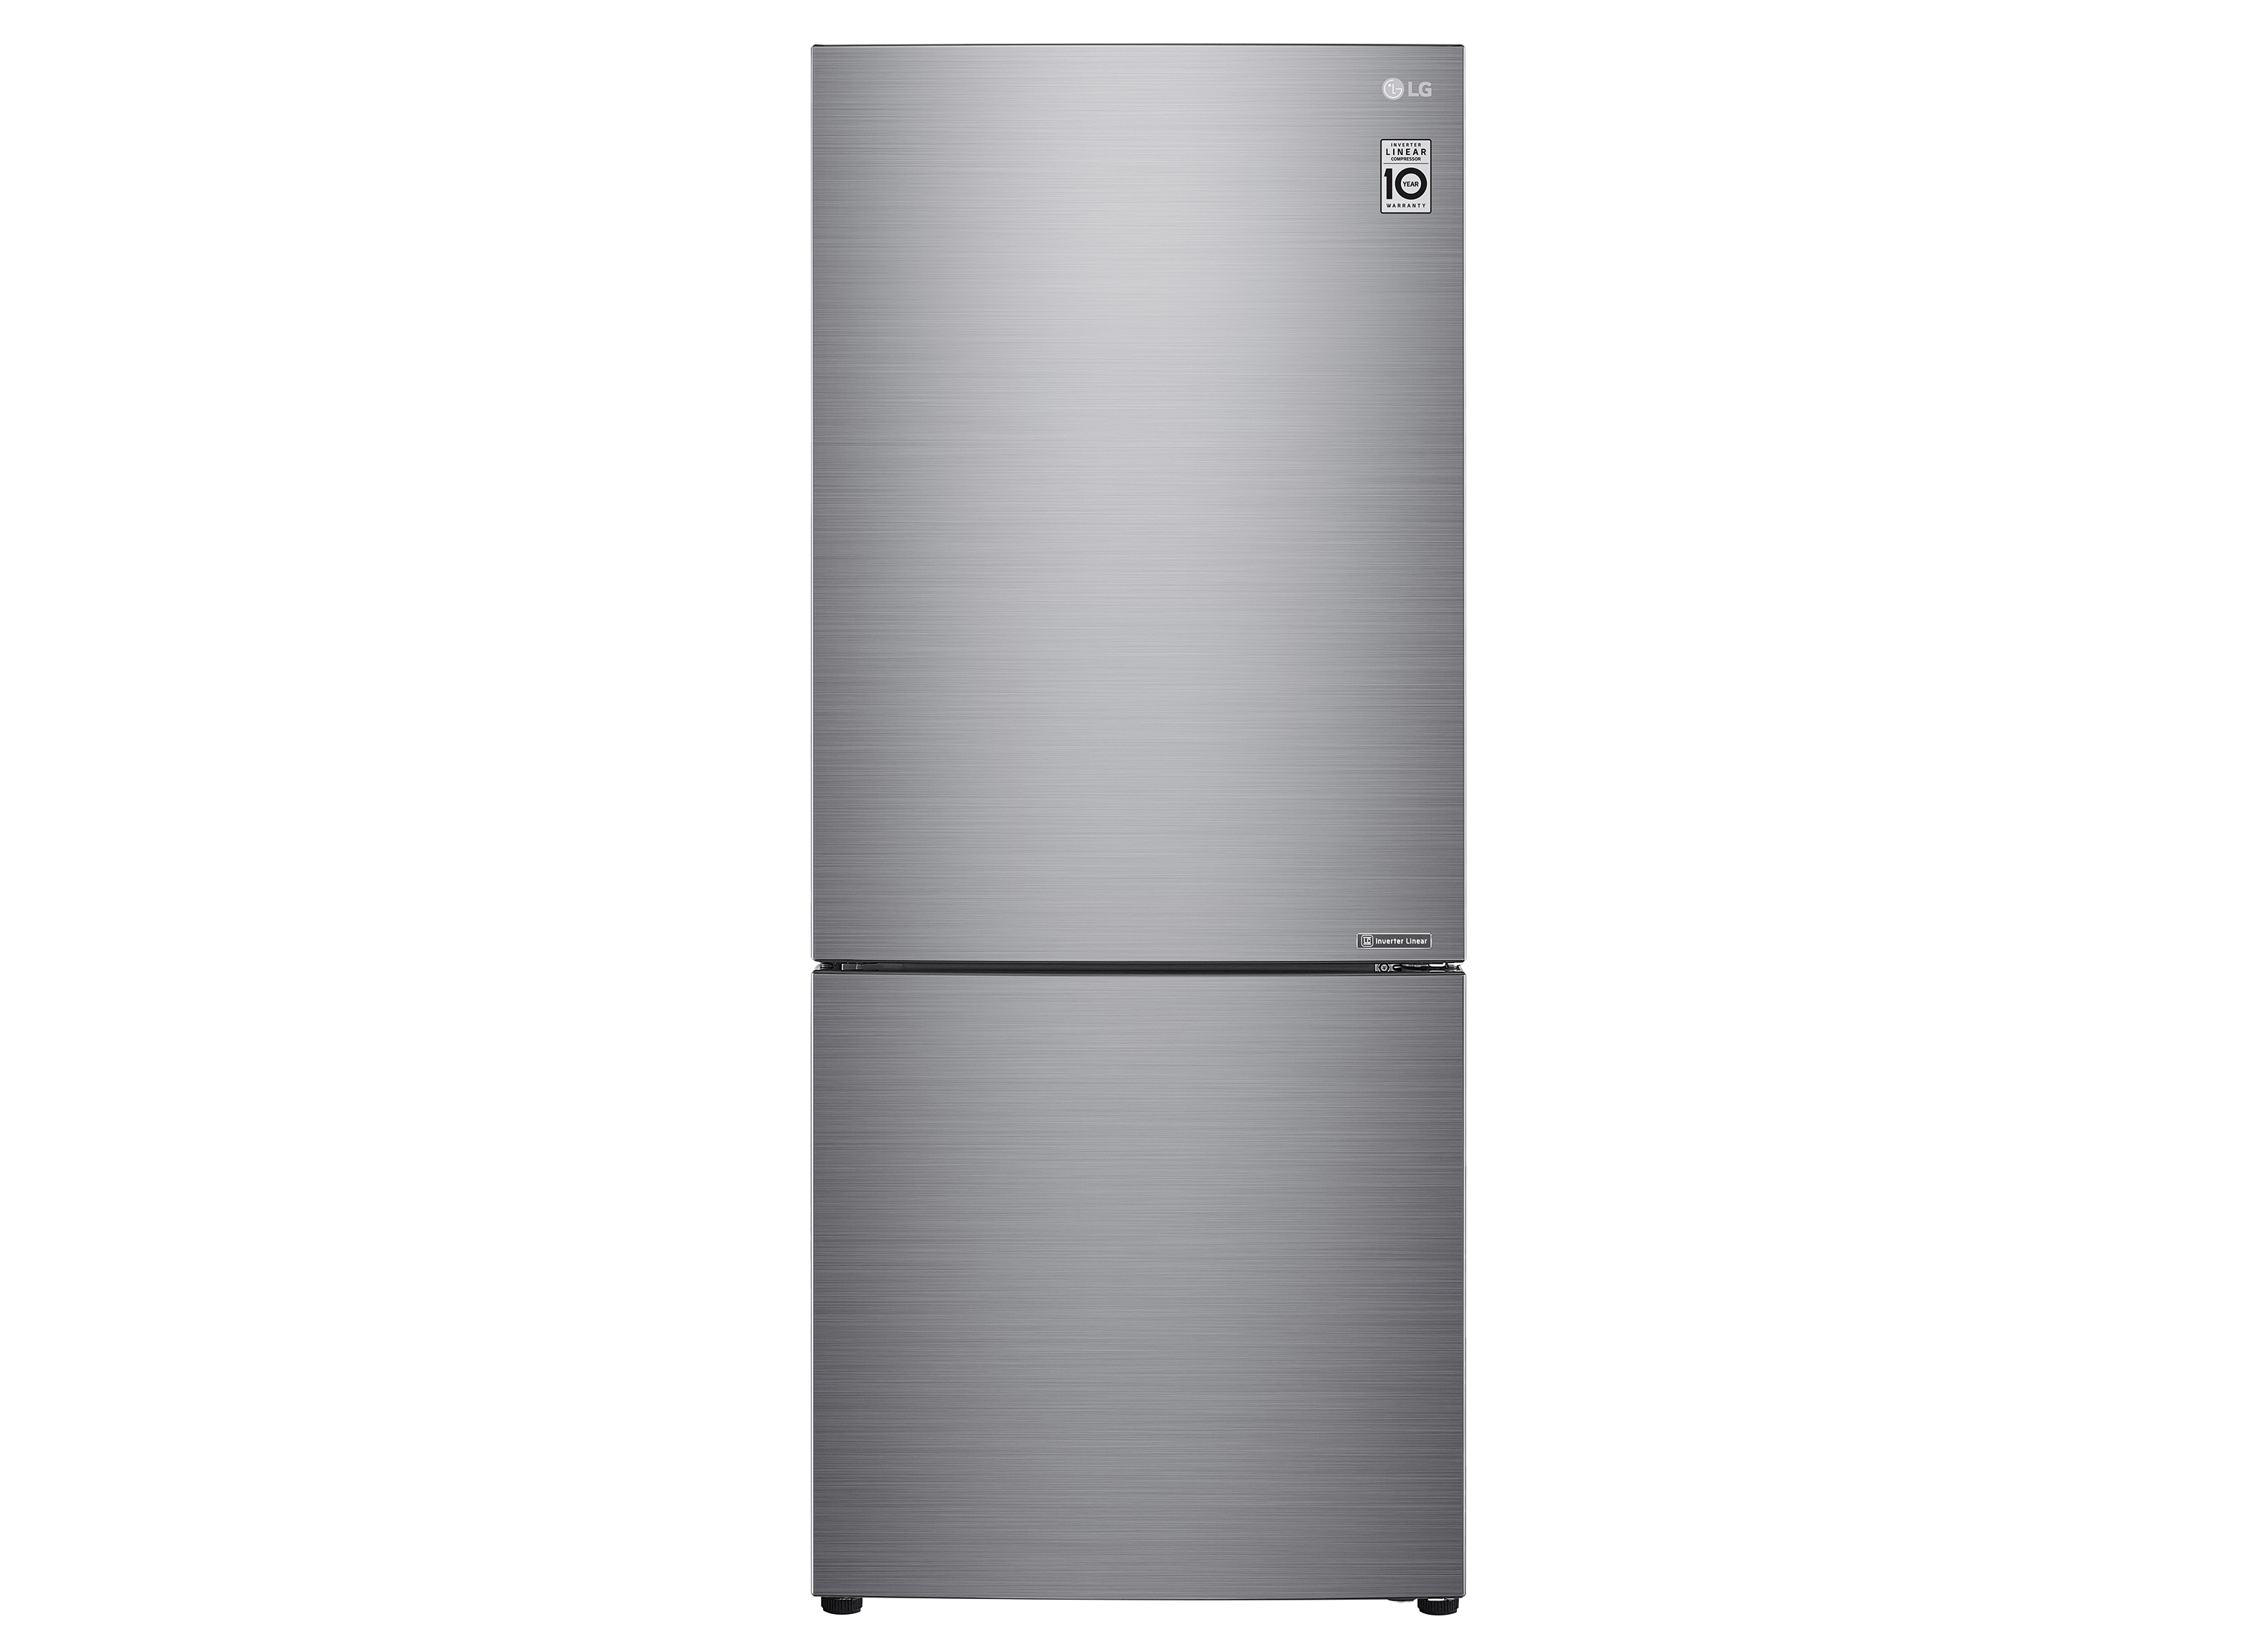 LG LBNC15231V Refrigerator Review - Consumer Reports